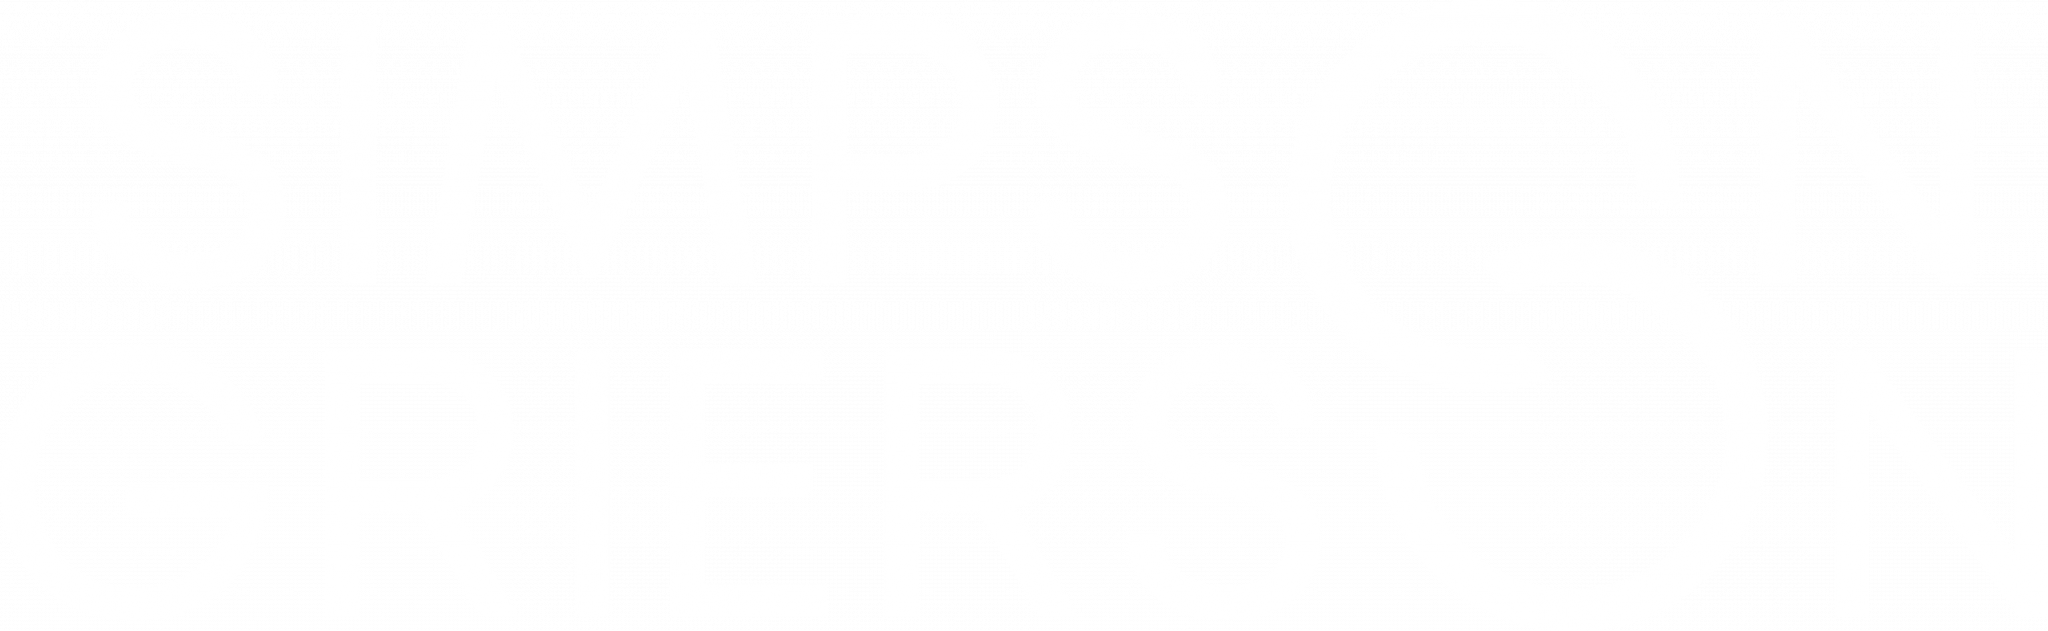 Simpson Grierson logo